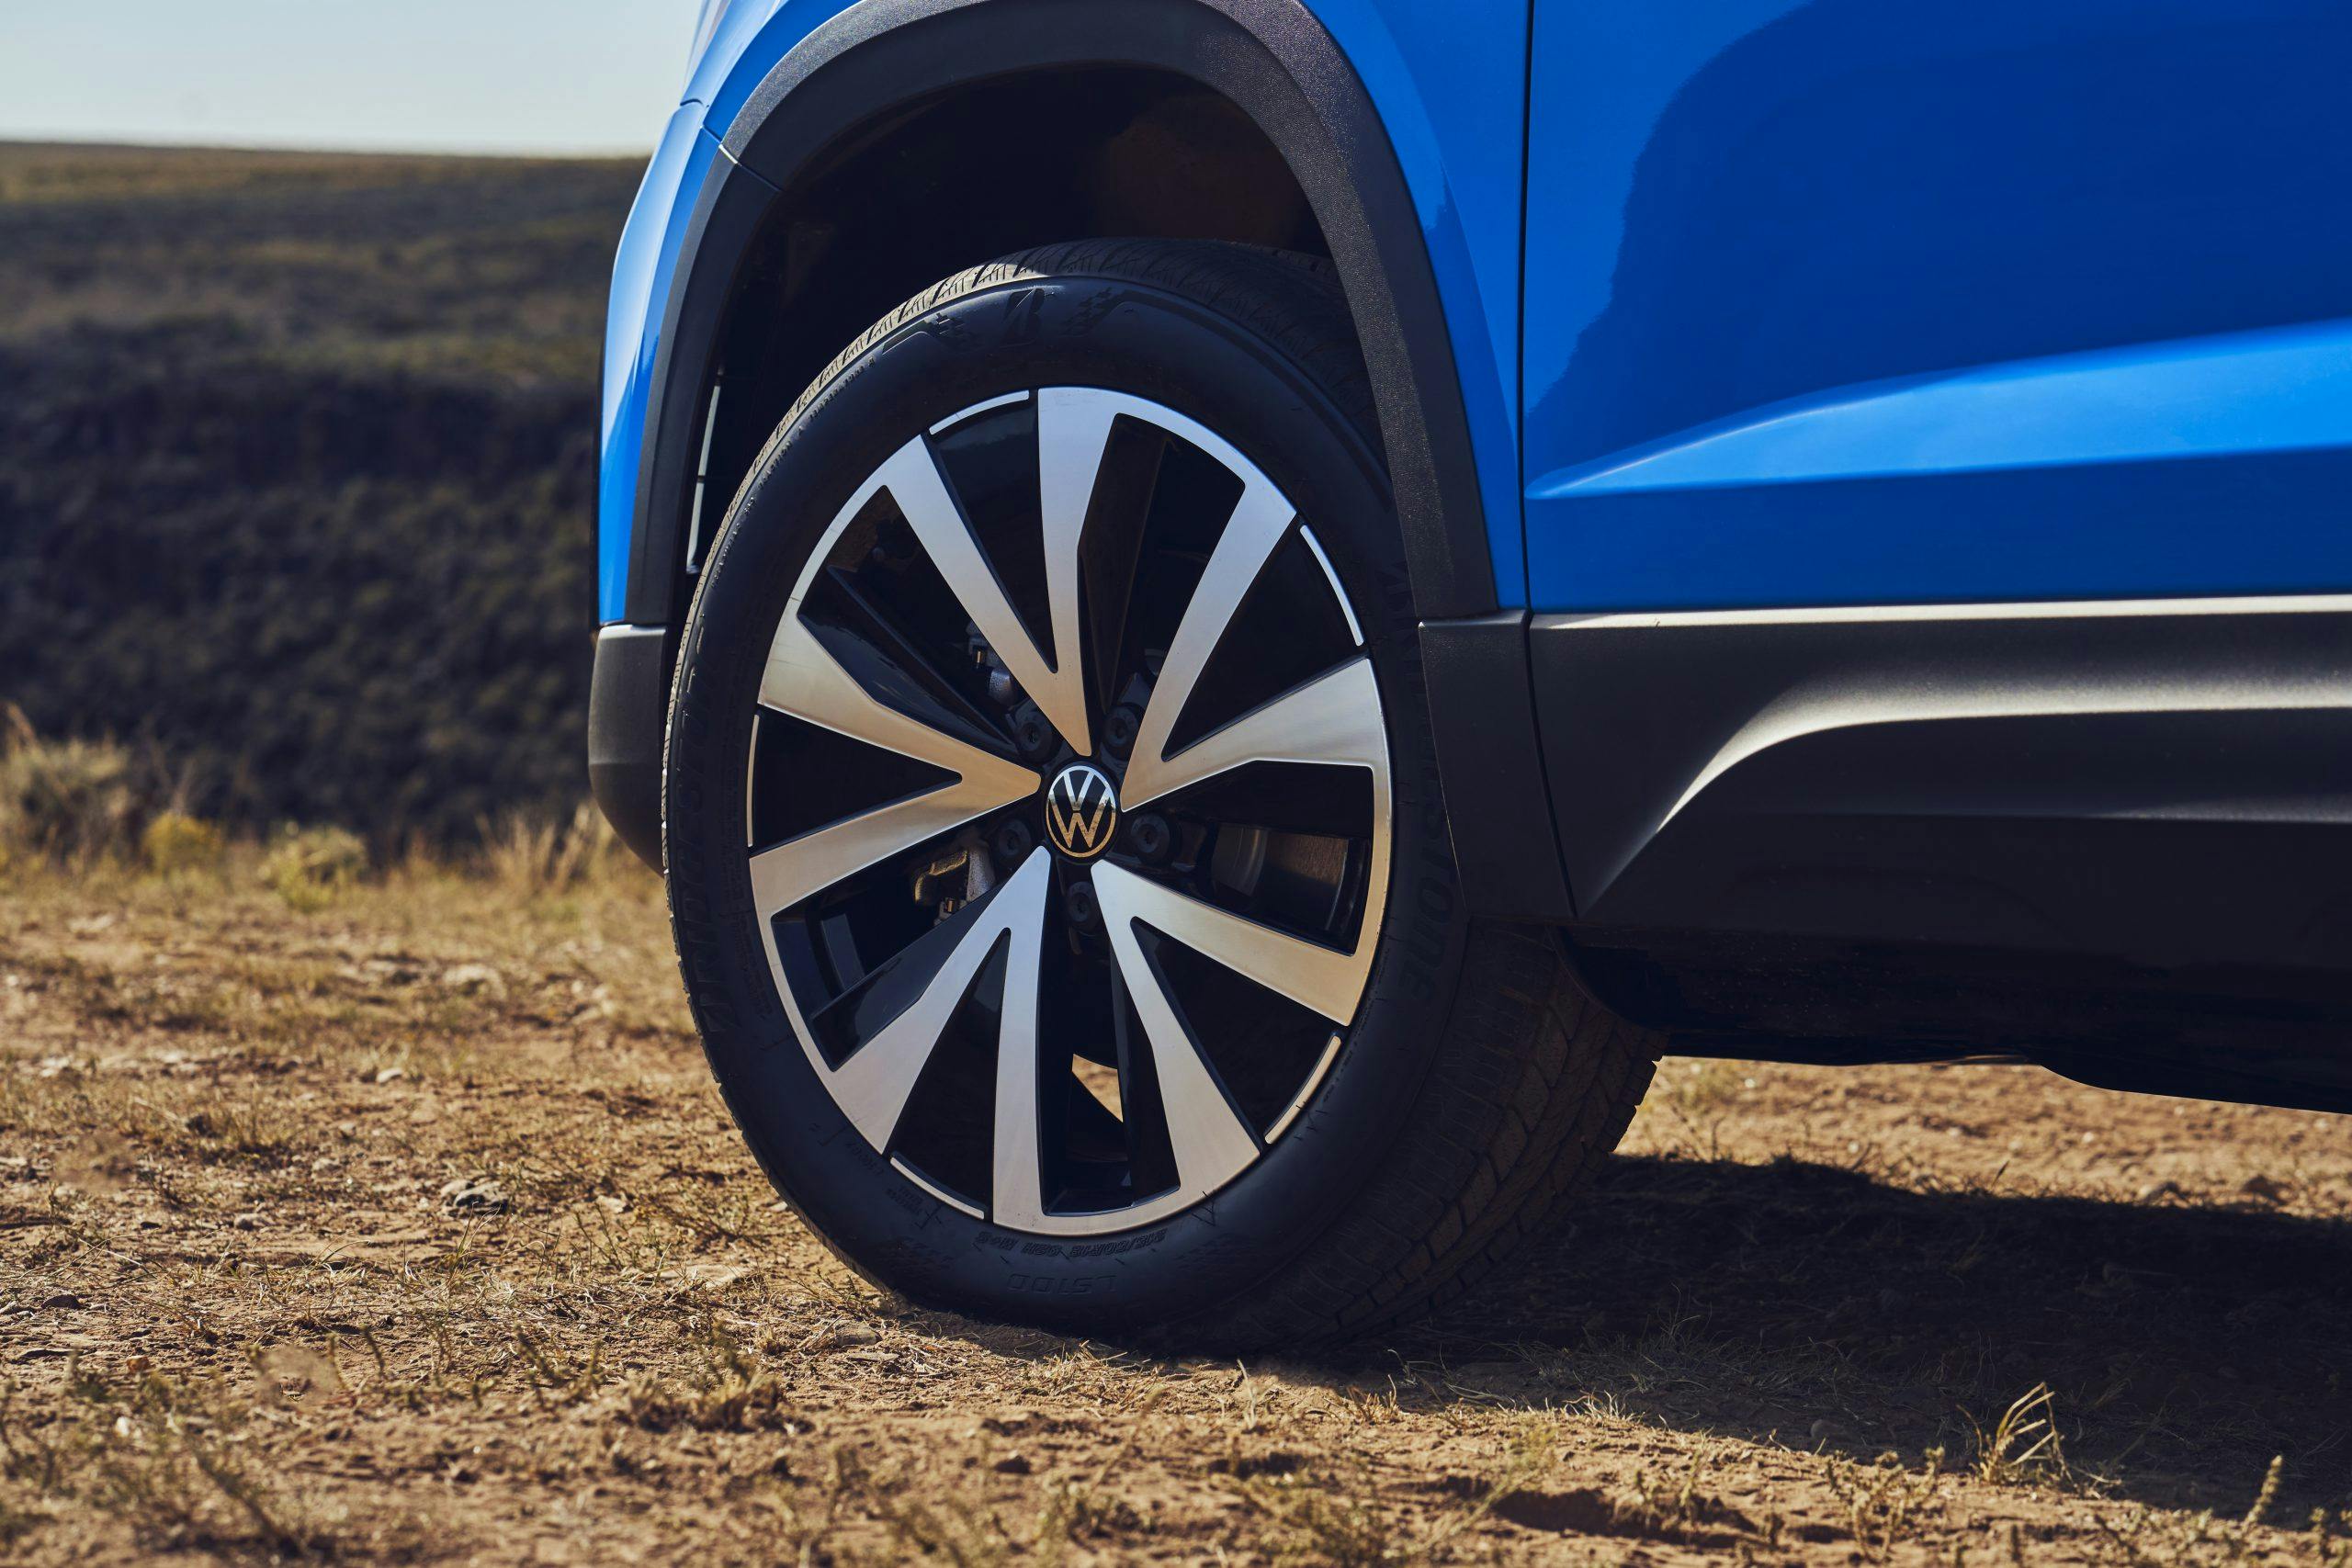 2022 Volkswagen Taos wheel